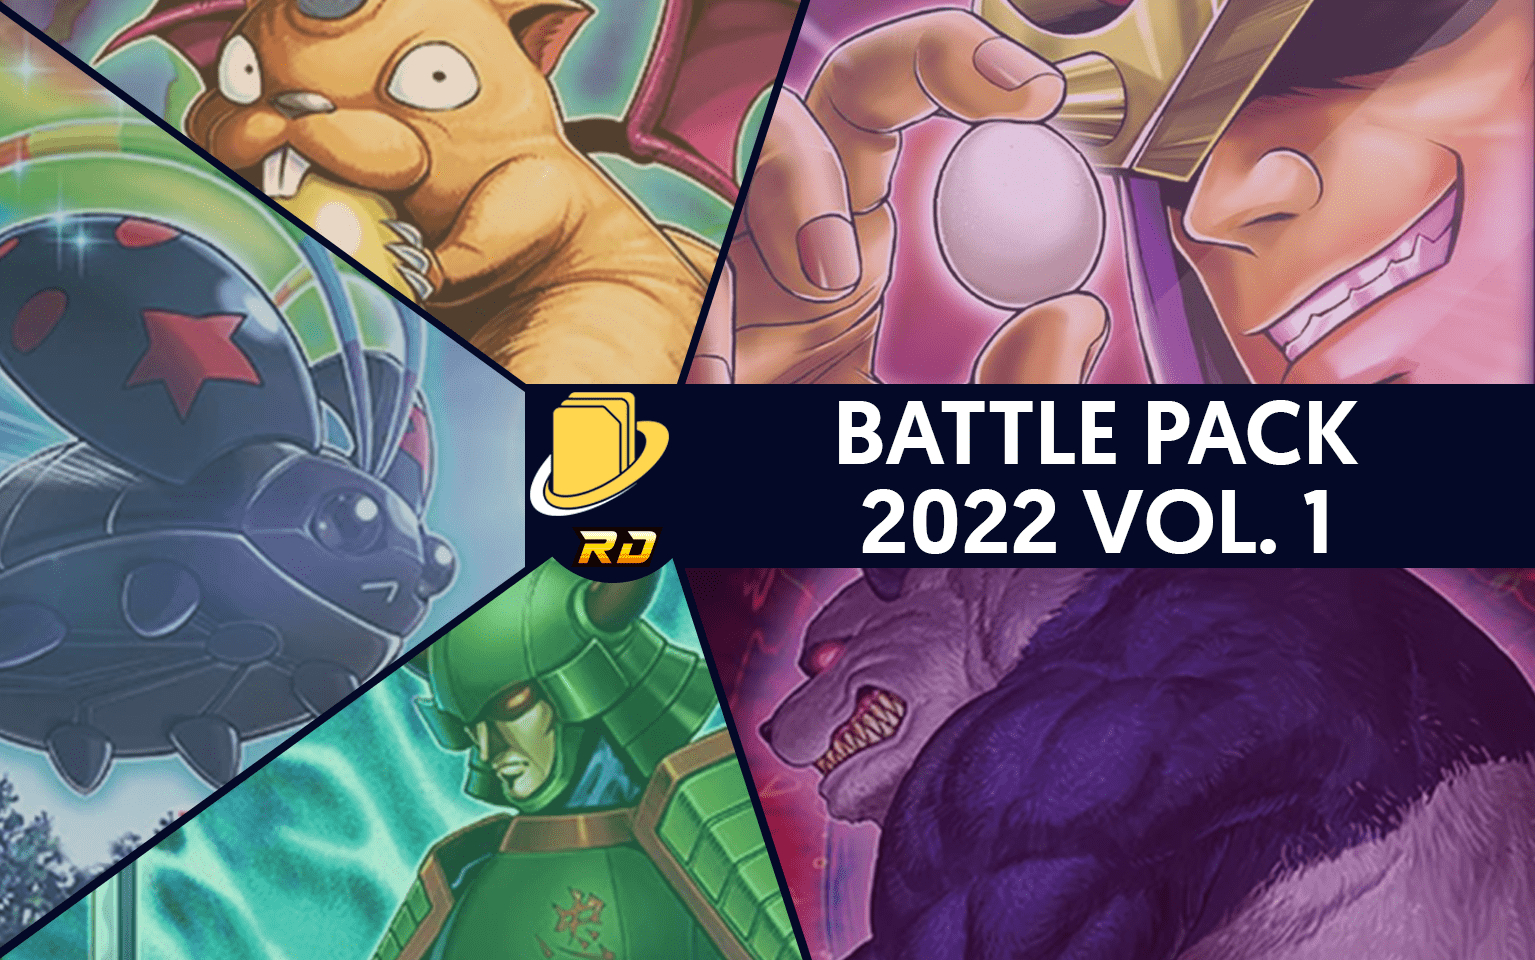 Les cartes du Battle Pack 2022 Vol. 1